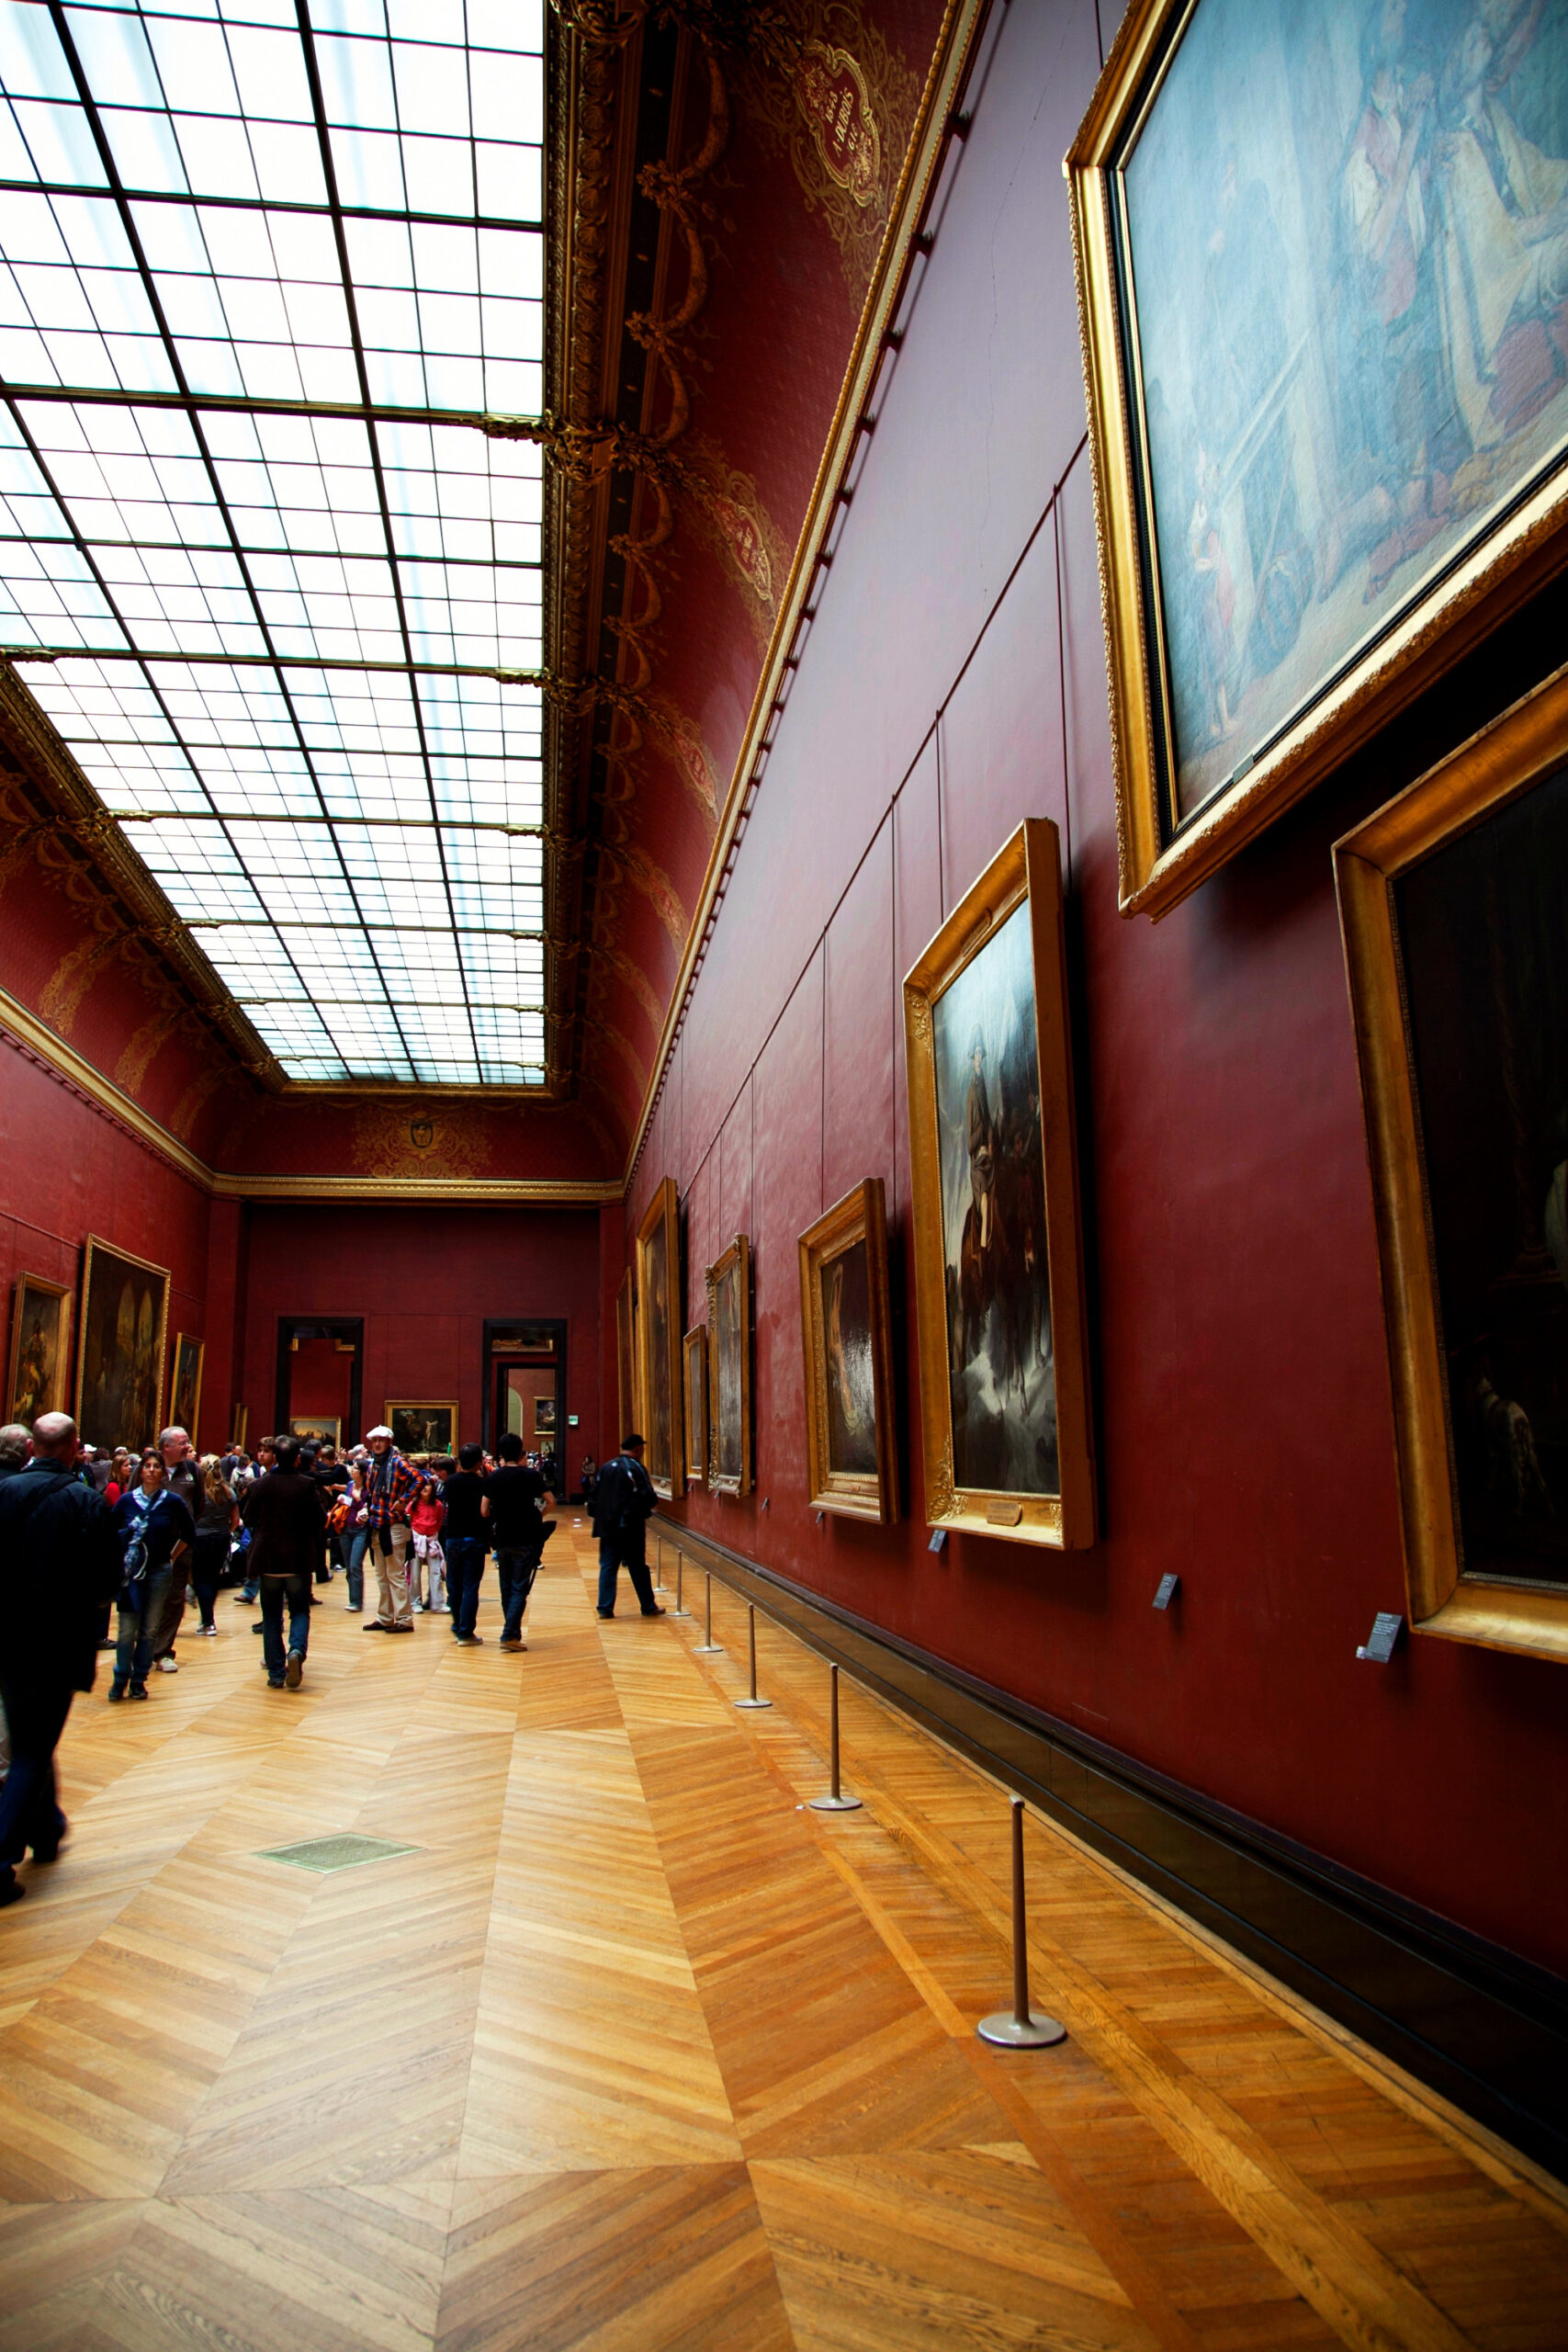 1. The Mona Lisa, Louvre Museum, Paris